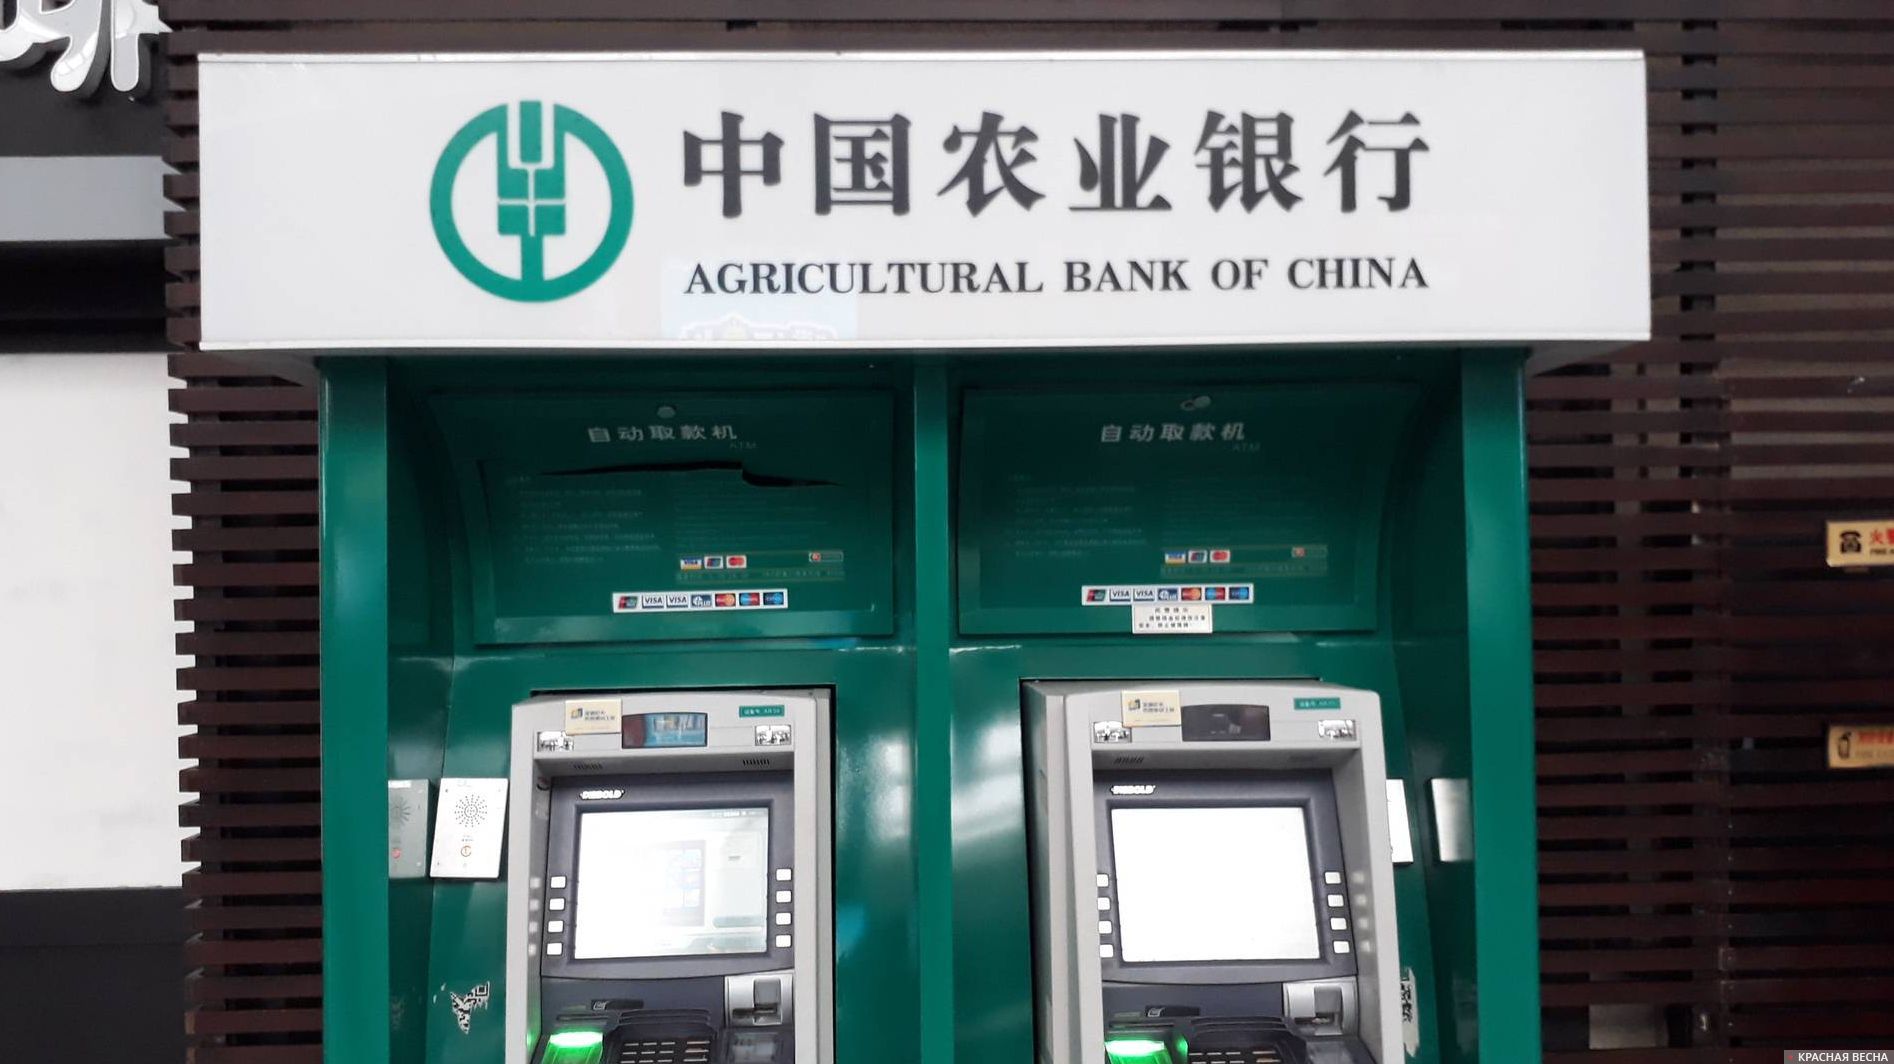 Kunlun банк. Китайский банк. Сельскохозяйственный банк Китая. Народный банк Китая. Китайский сельскохозяйственный банк (Agricultural Bank of China Limited).